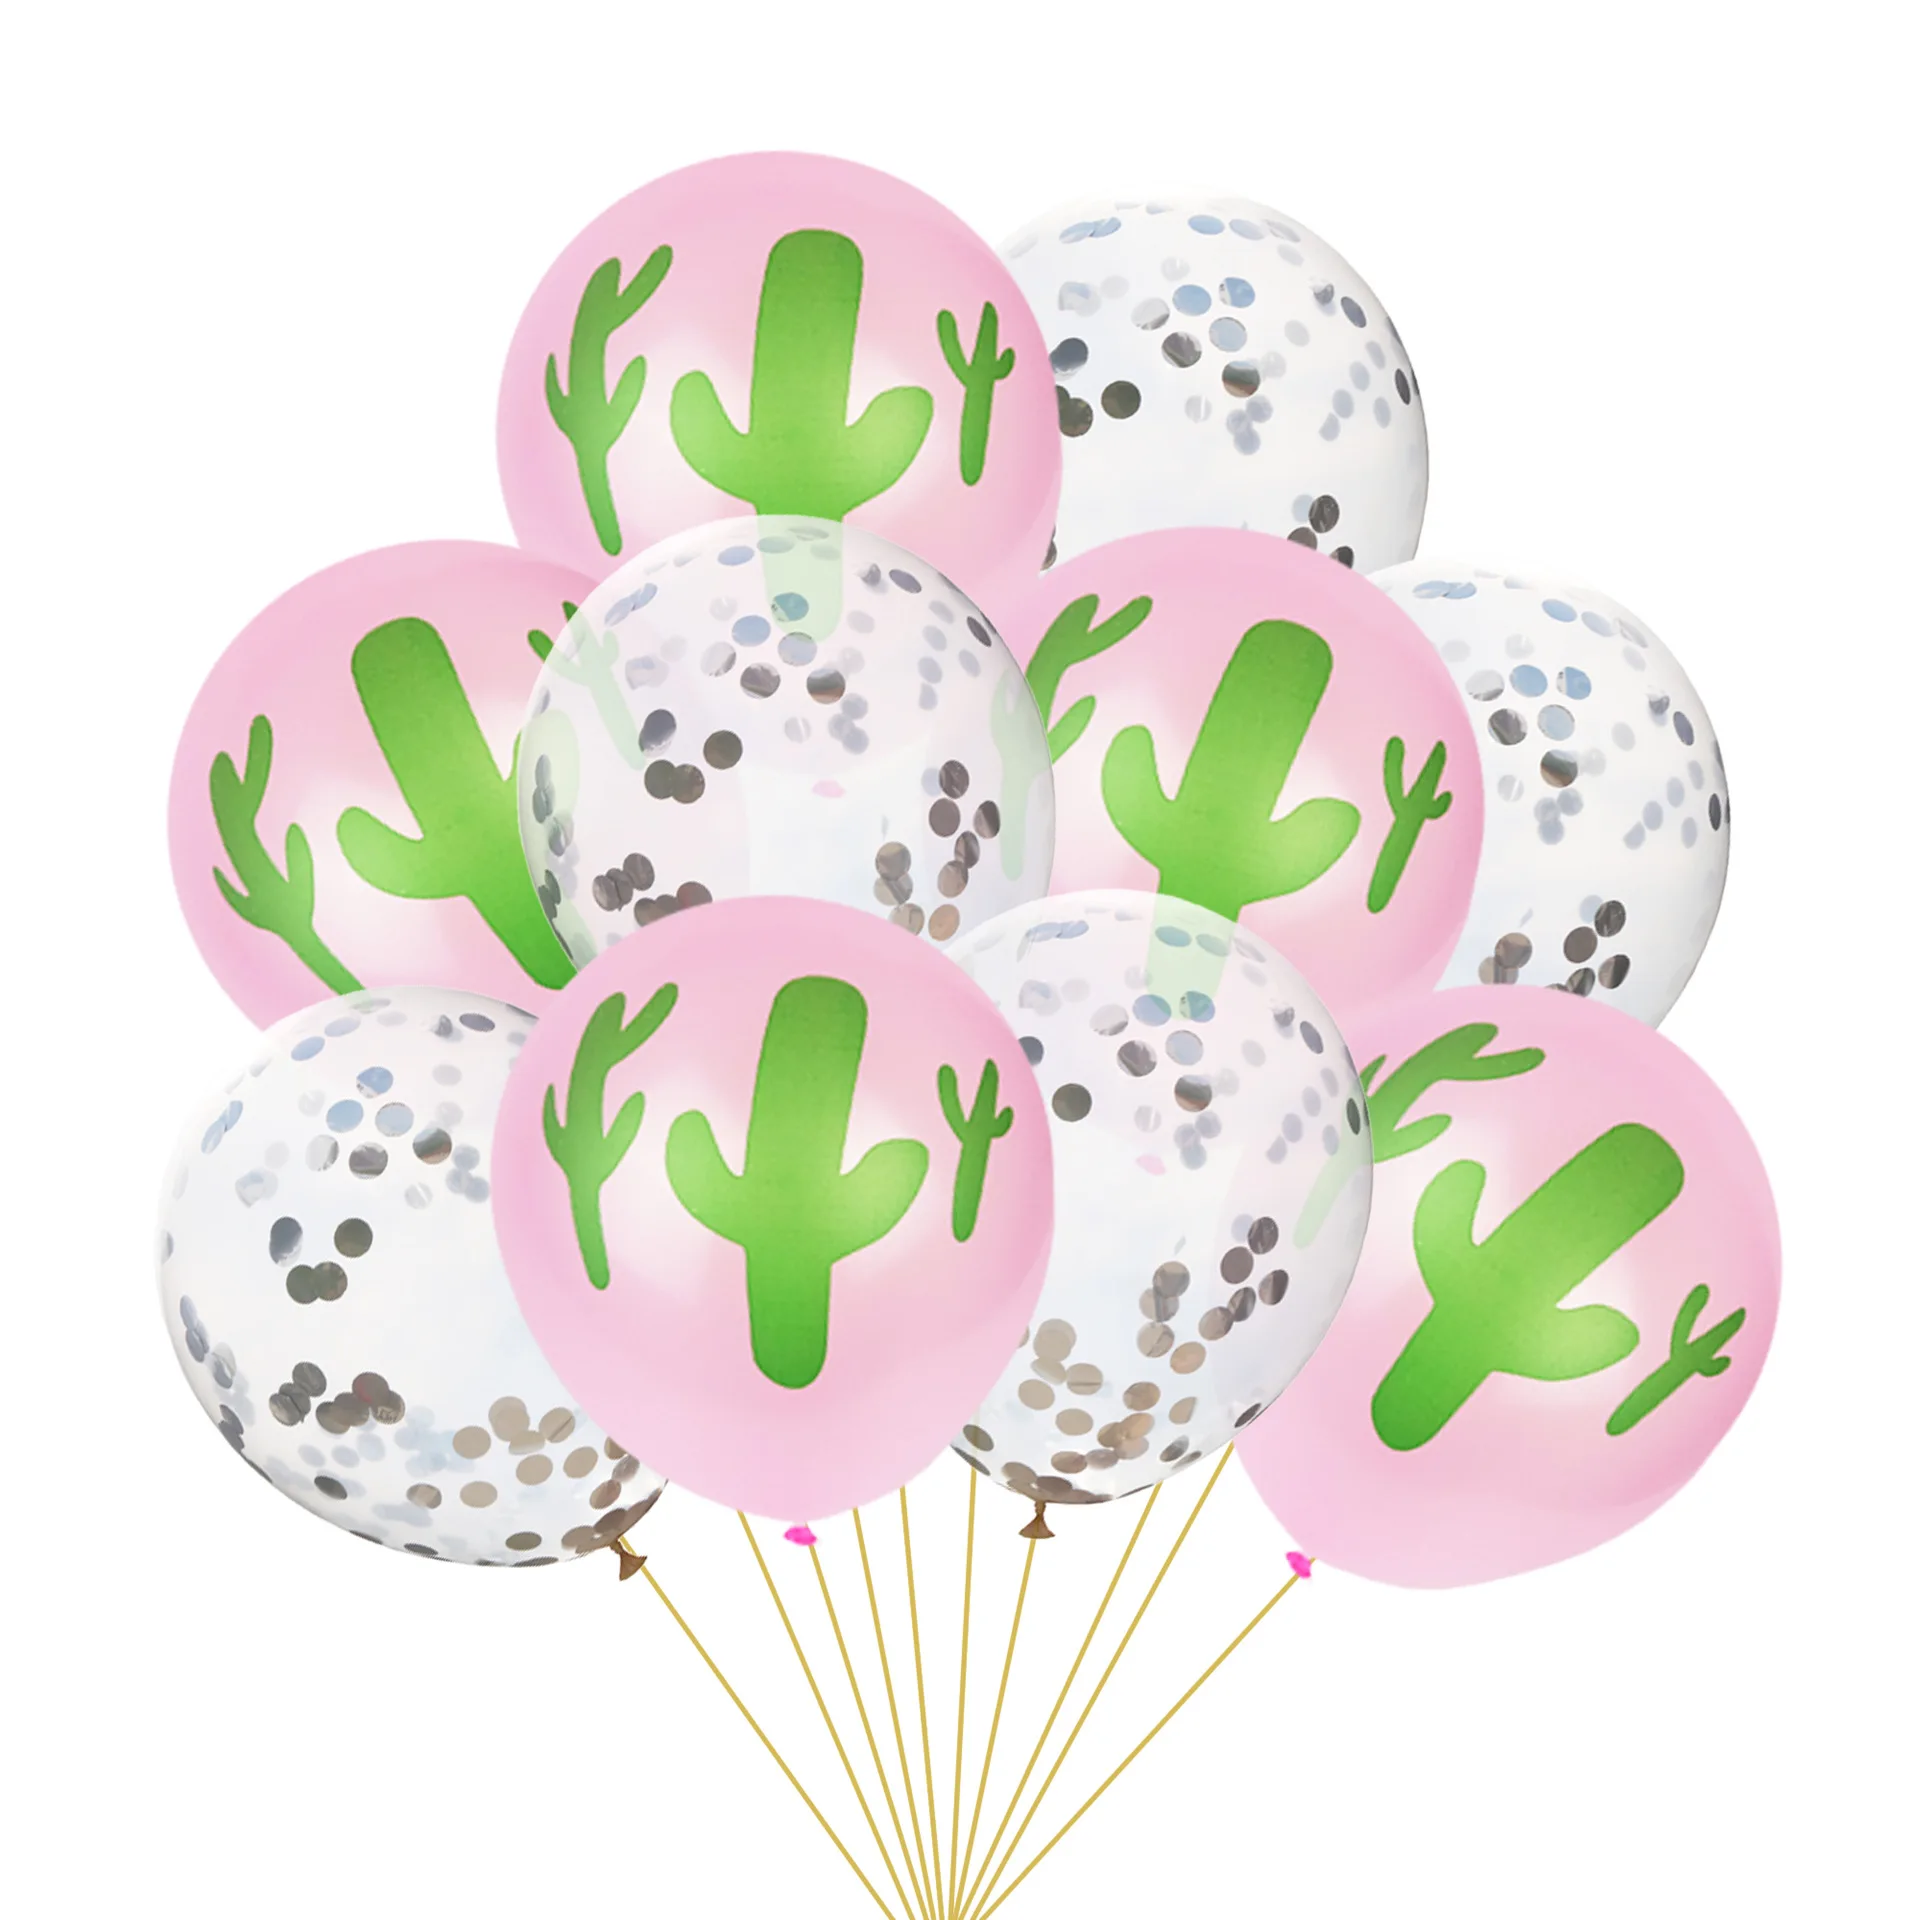 10 шт 12 дюймов кактус розовые цвета латексные шары воздушные шары с конфетти надувной шар для дня рождения свадьбы партии поставки воздушных шаров - Цвет: C